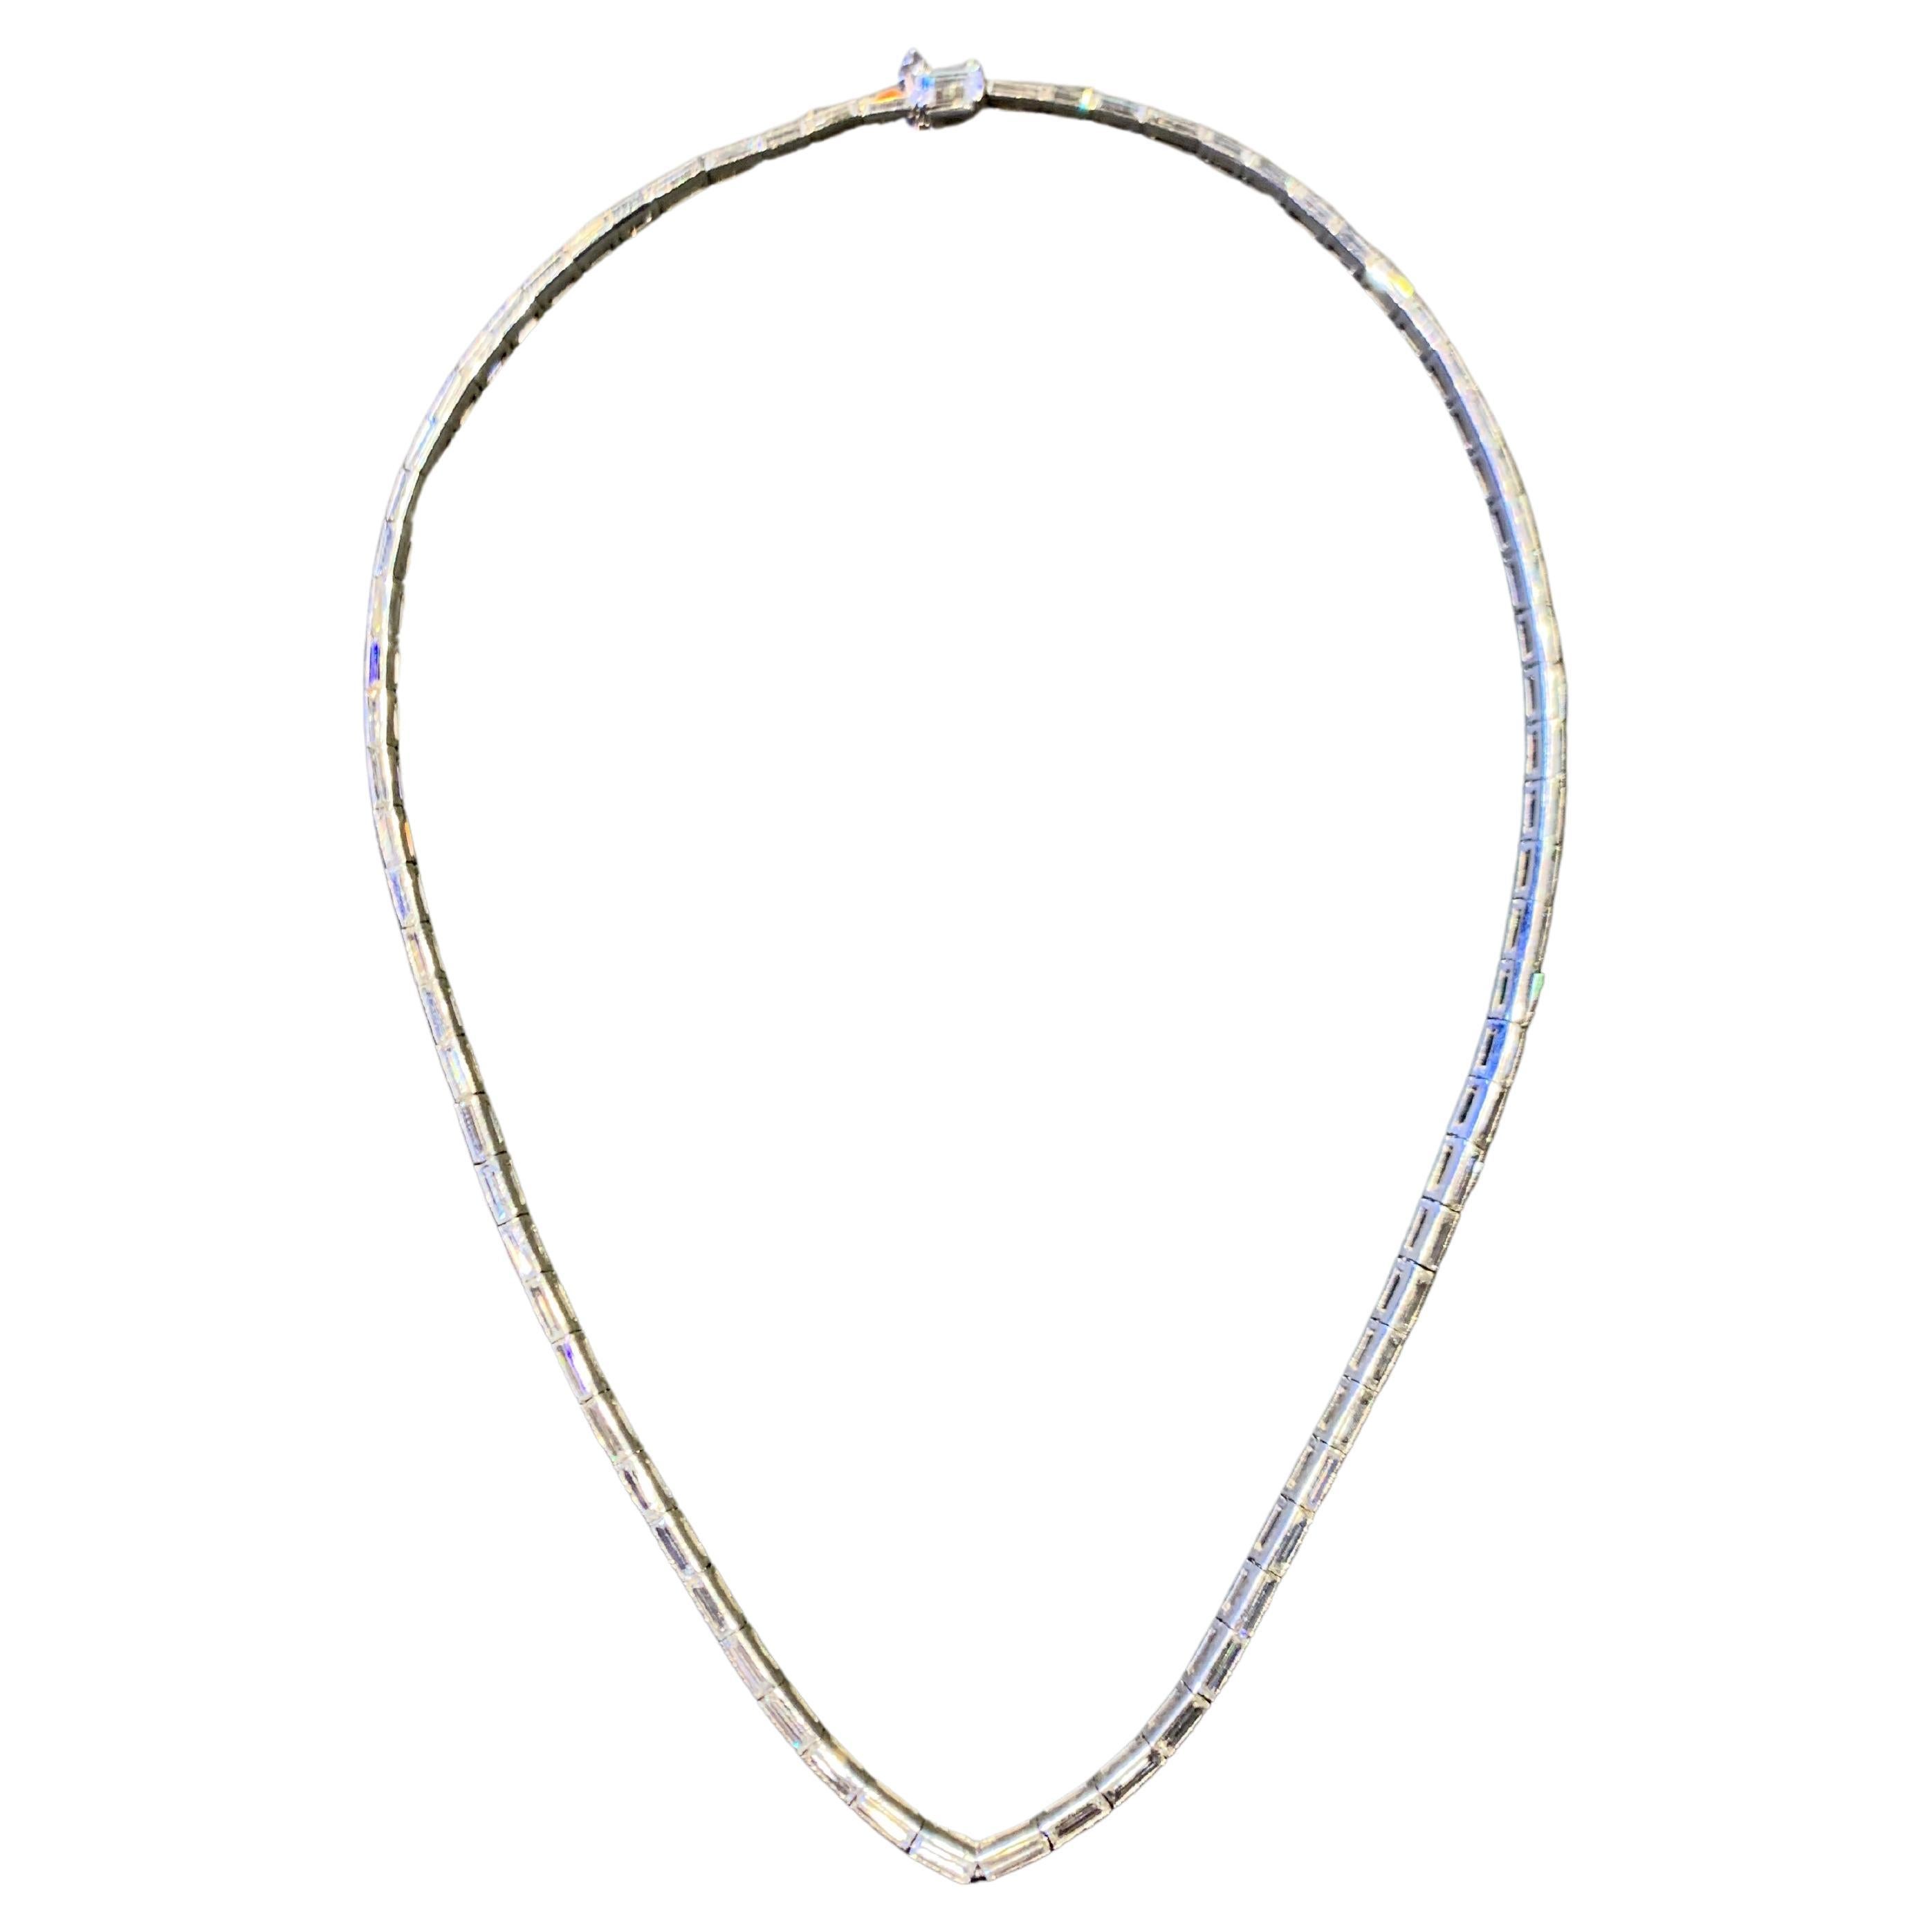 Diamant-Halskette im Baguetteschliff

Platinhalskette, besetzt mit 72 Diamanten im Baguetteschliff und 1 Diamant im Smaragdschliff

Ungefähres Gesamtgewicht der Diamanten: 7,0 Karat

Länge: 15.75